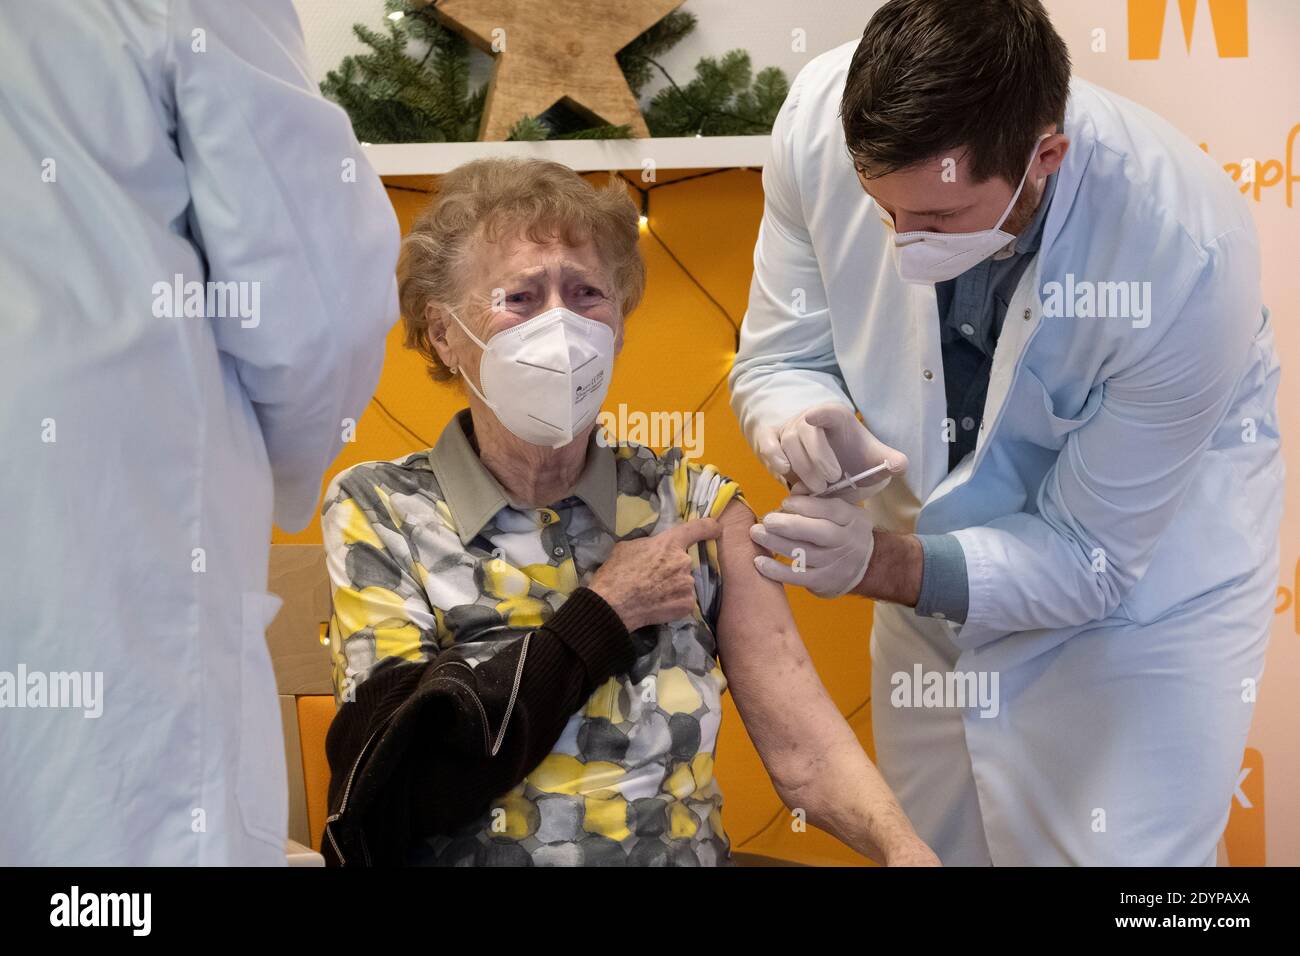 Il 27.12.20 si sono svolte in Germania le prime vaccinazioni con il vaccino Pfizer BiONTECH Covid-19 contro il coronavirus. Foto Stock